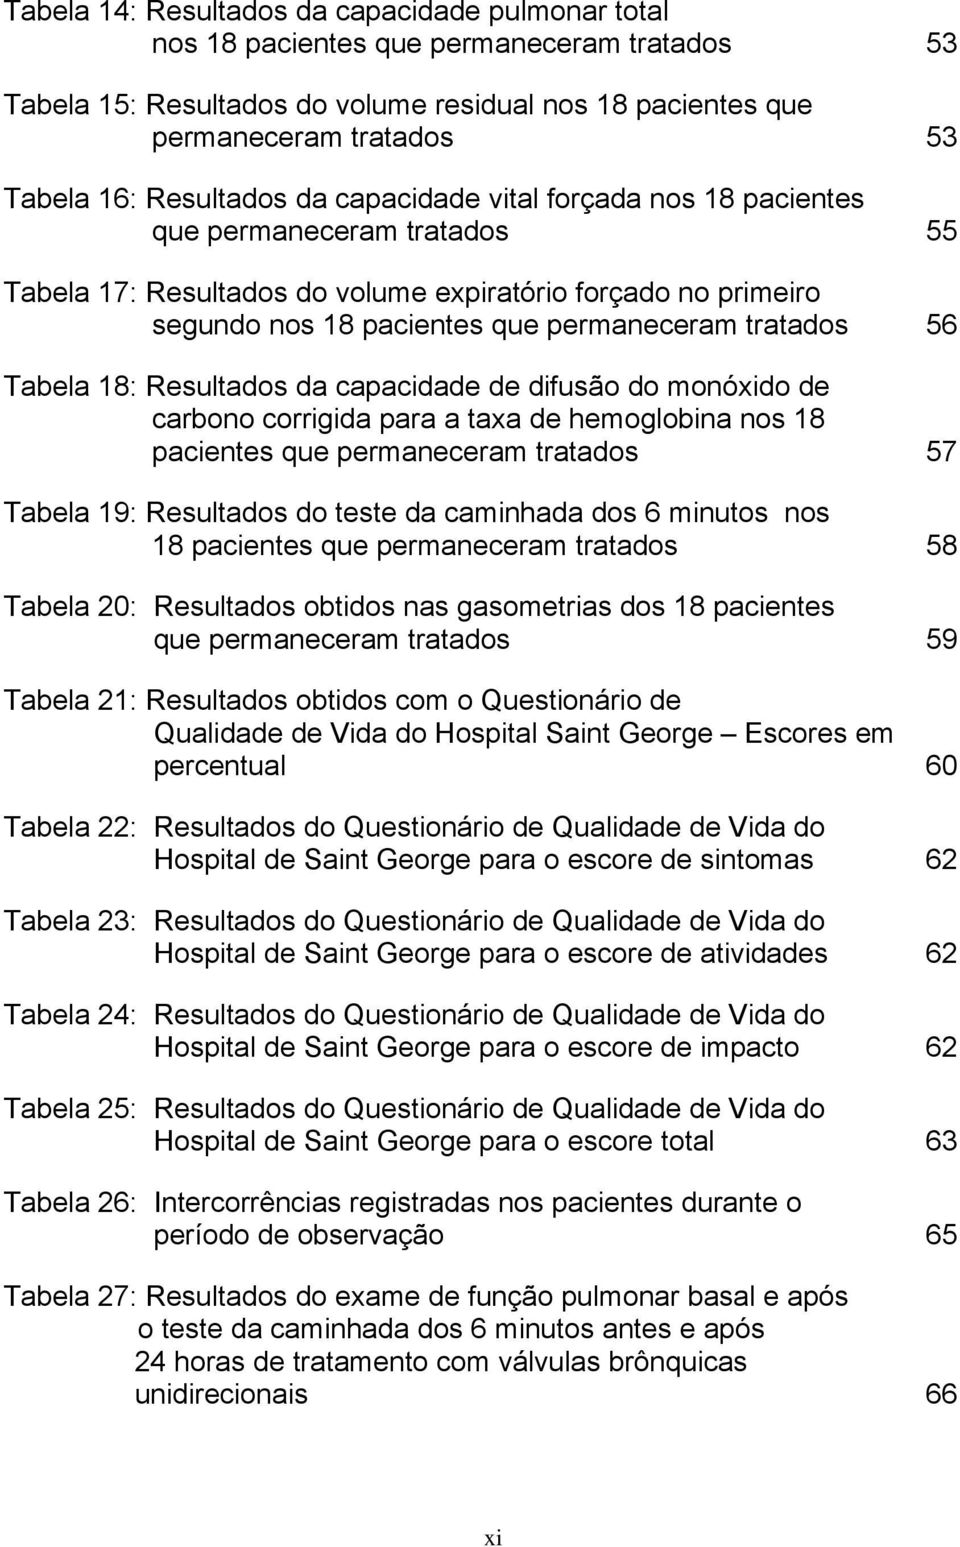 56 Tabela 18: Resultados da capacidade de difusão do monóxido de carbono corrigida para a taxa de hemoglobina nos 18 pacientes que permaneceram tratados 57 Tabela 19: Resultados do teste da caminhada